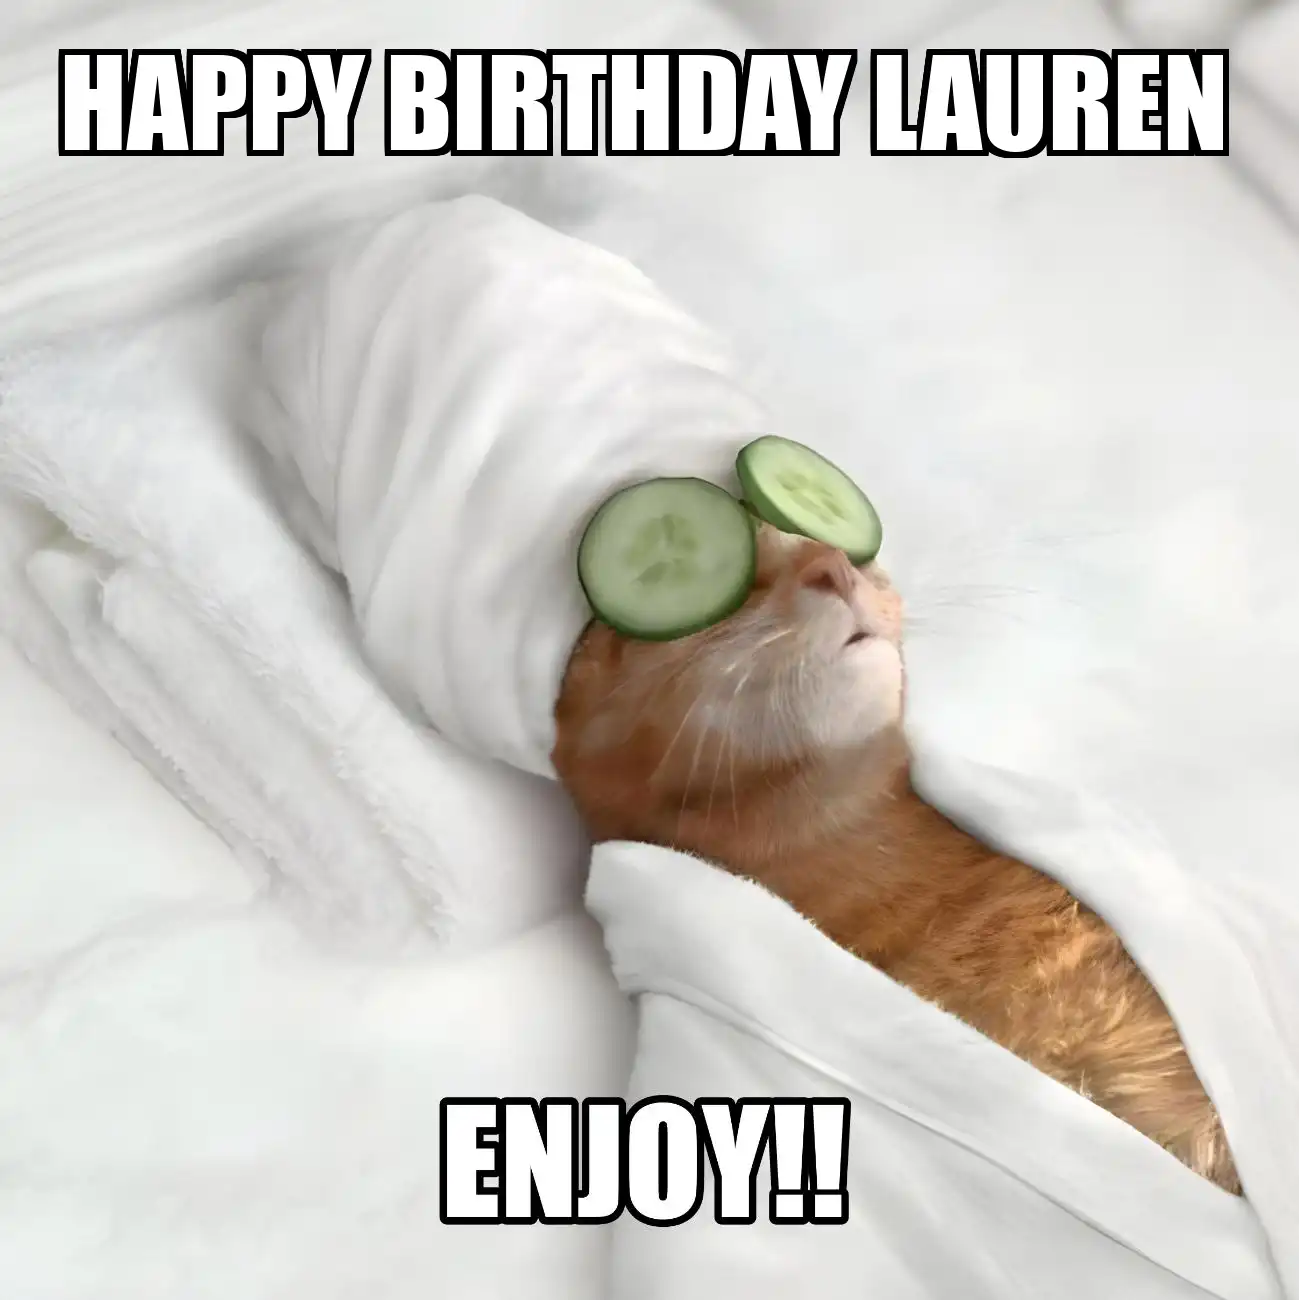 Happy Birthday Lauren Enjoy Cat Meme